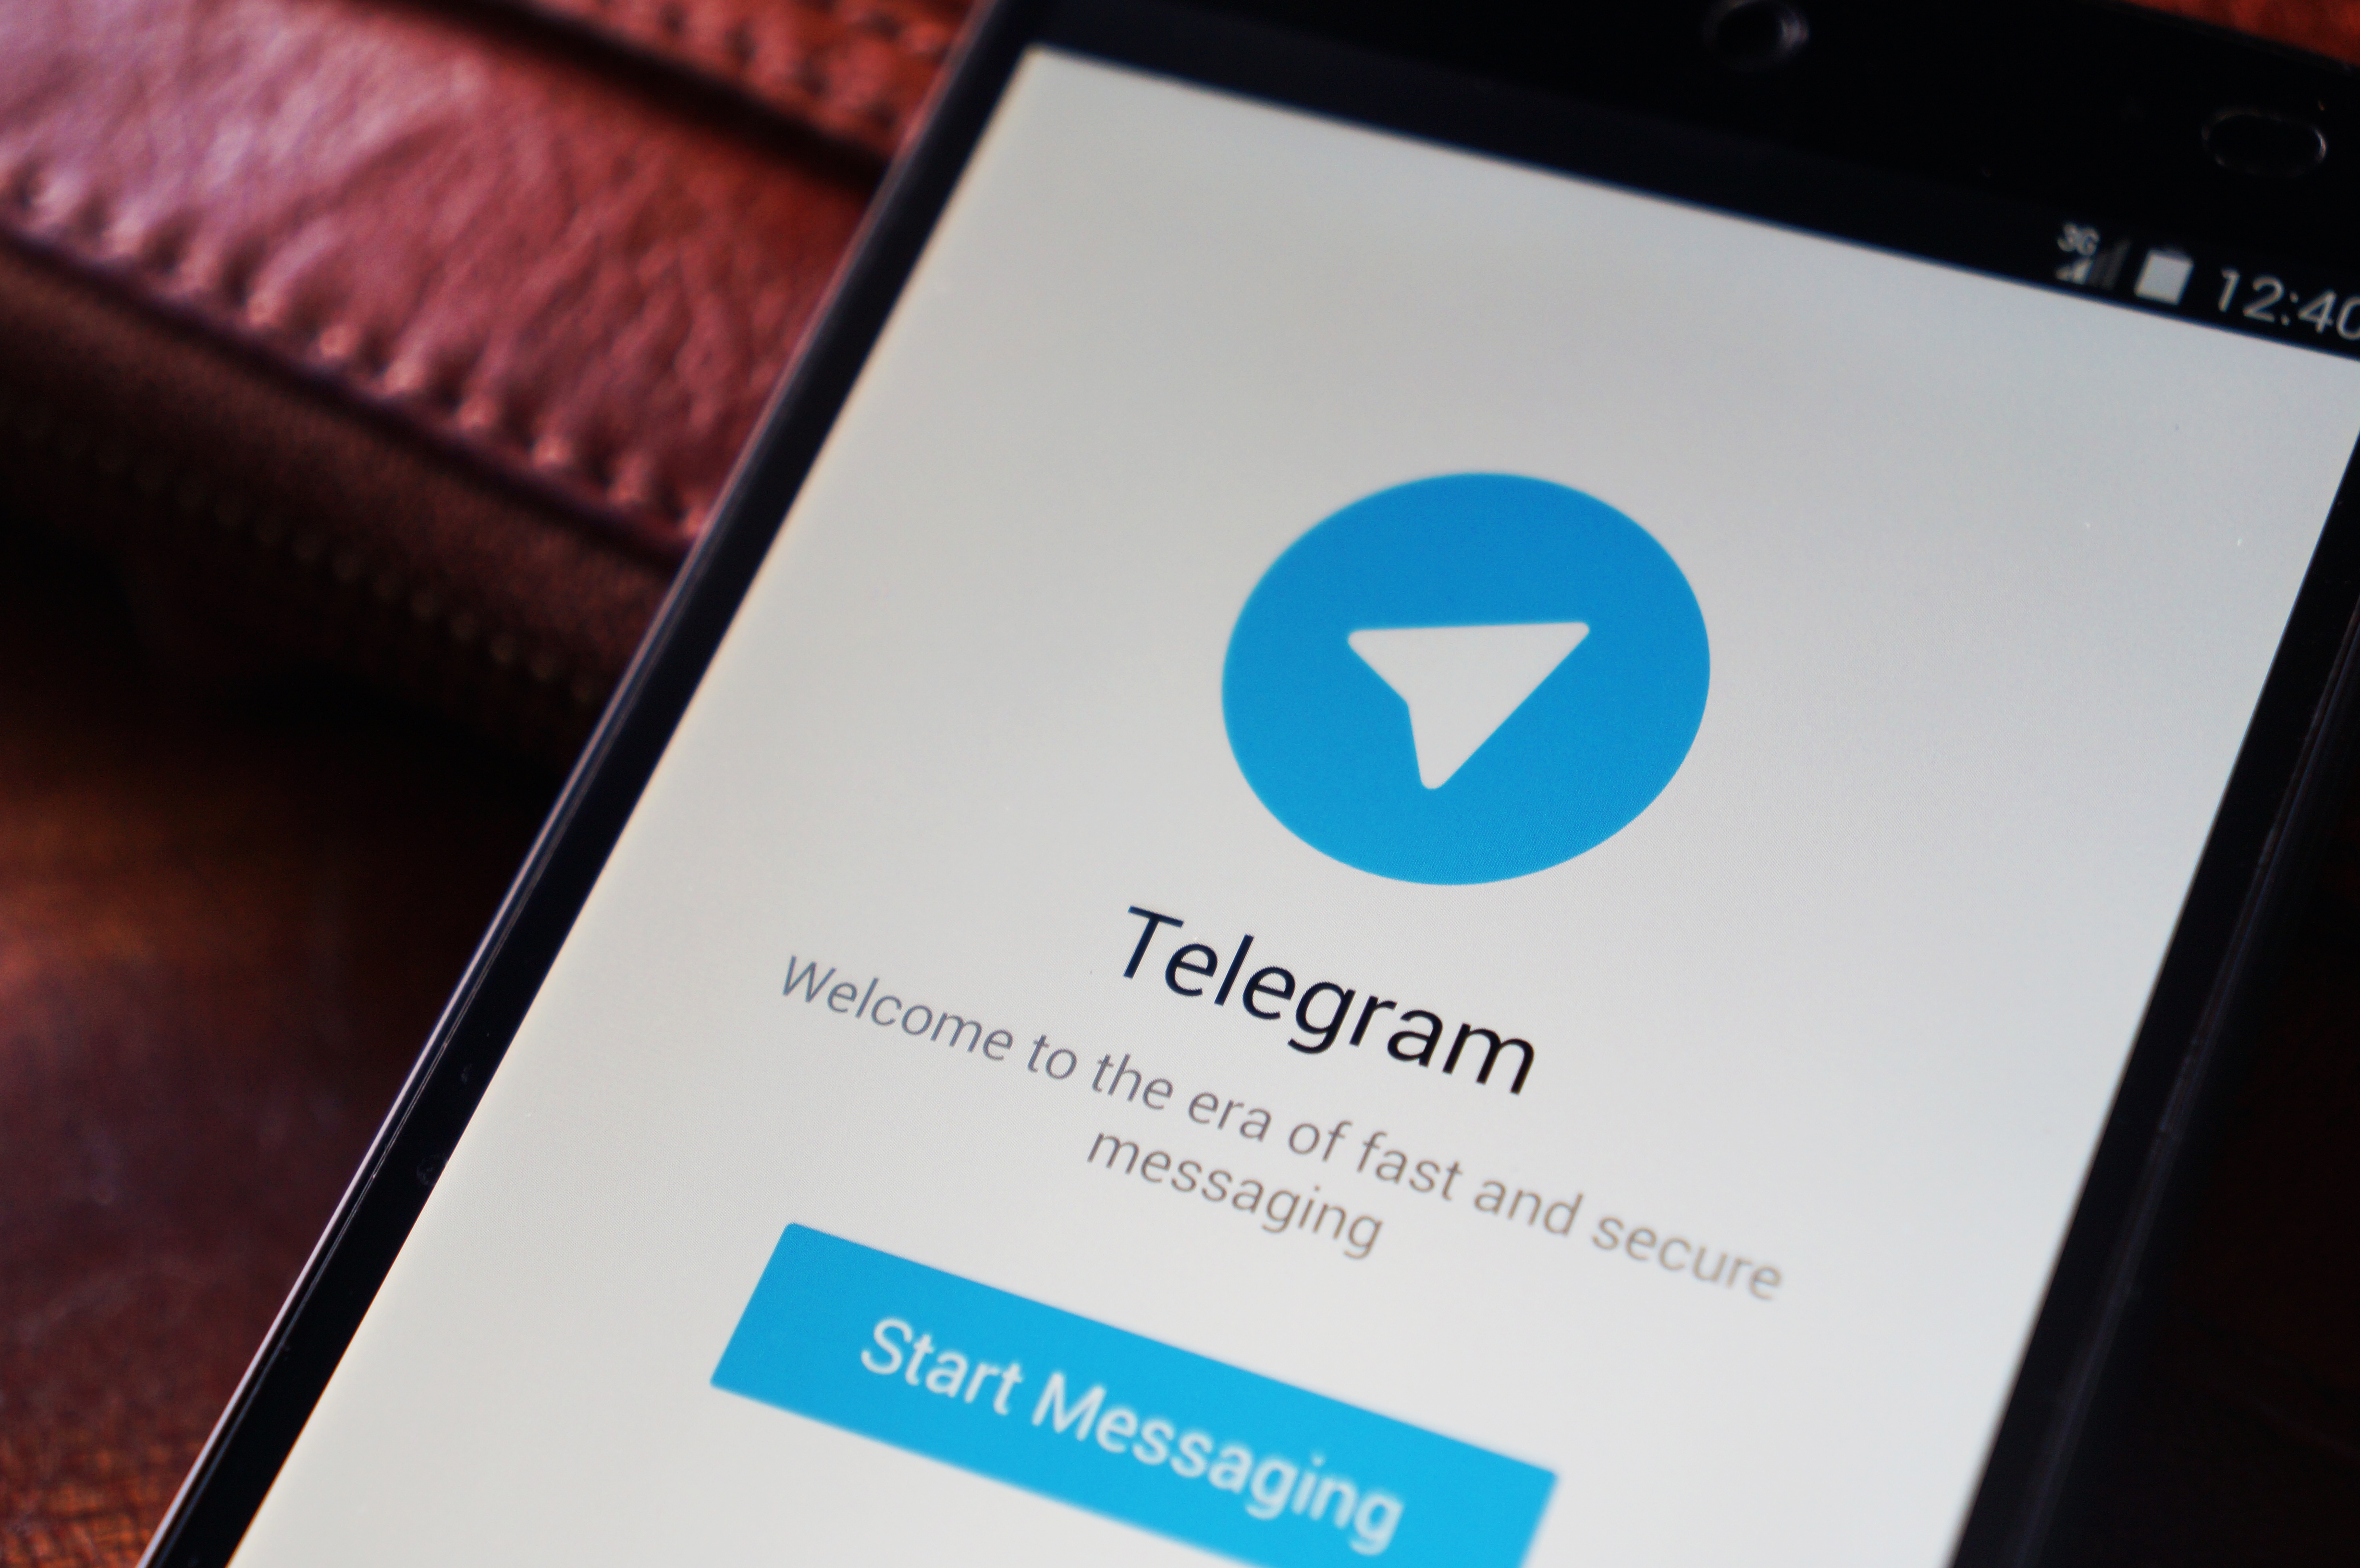 Аудиторія проекту Павла Дурова Telegram сягнула 35 мільйонів активних користувачів на місяць